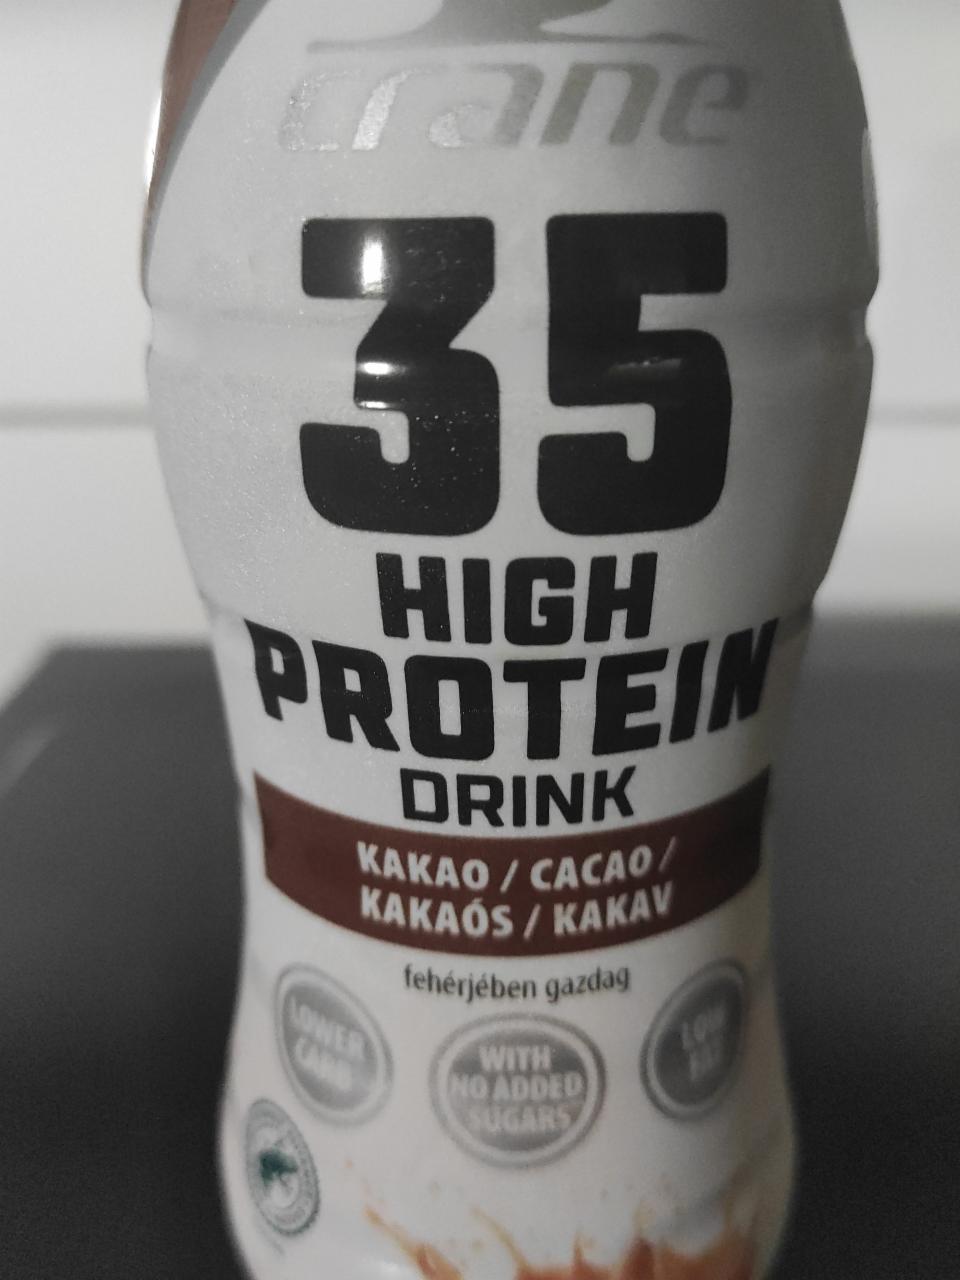 Fotografie - 35 High protein drink Kakao Crane